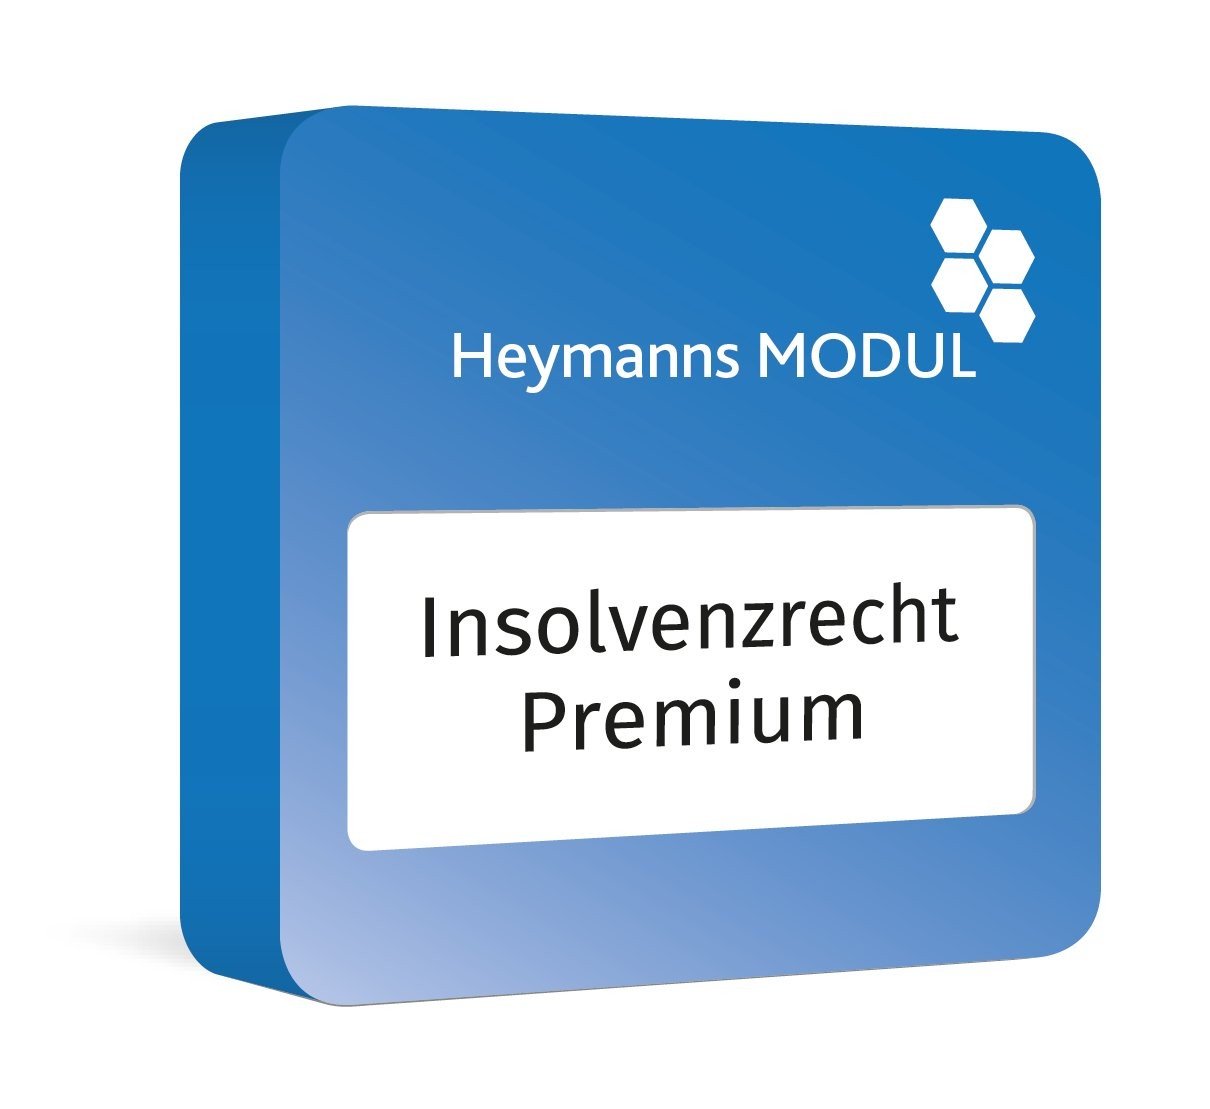 Heymanns Insolvenzrecht Premium - Modul für Insolvenz- und Sanierungsrecht